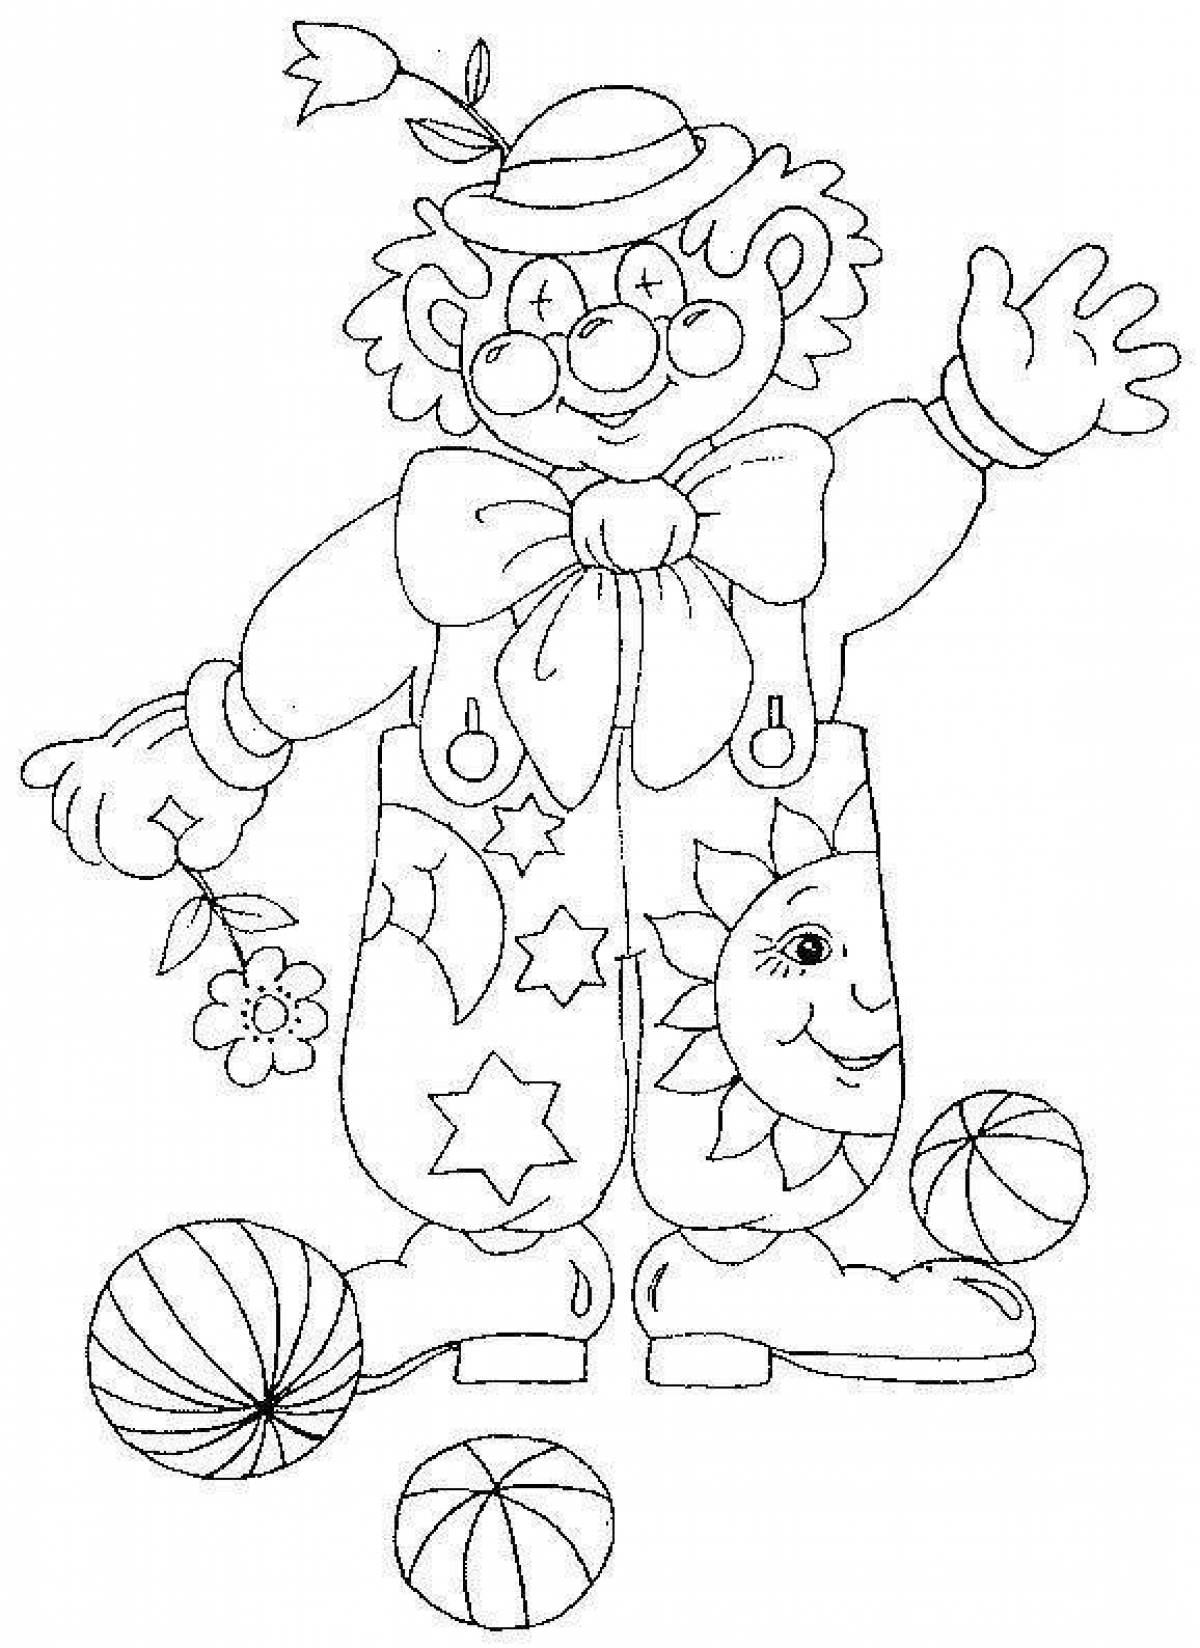 Клоуны раскраска для детей 5 лет. Клоун раскраска. Клоун раскраска для детей. Веселый клоун раскраска. Раскраска весёлый клоун для детей.